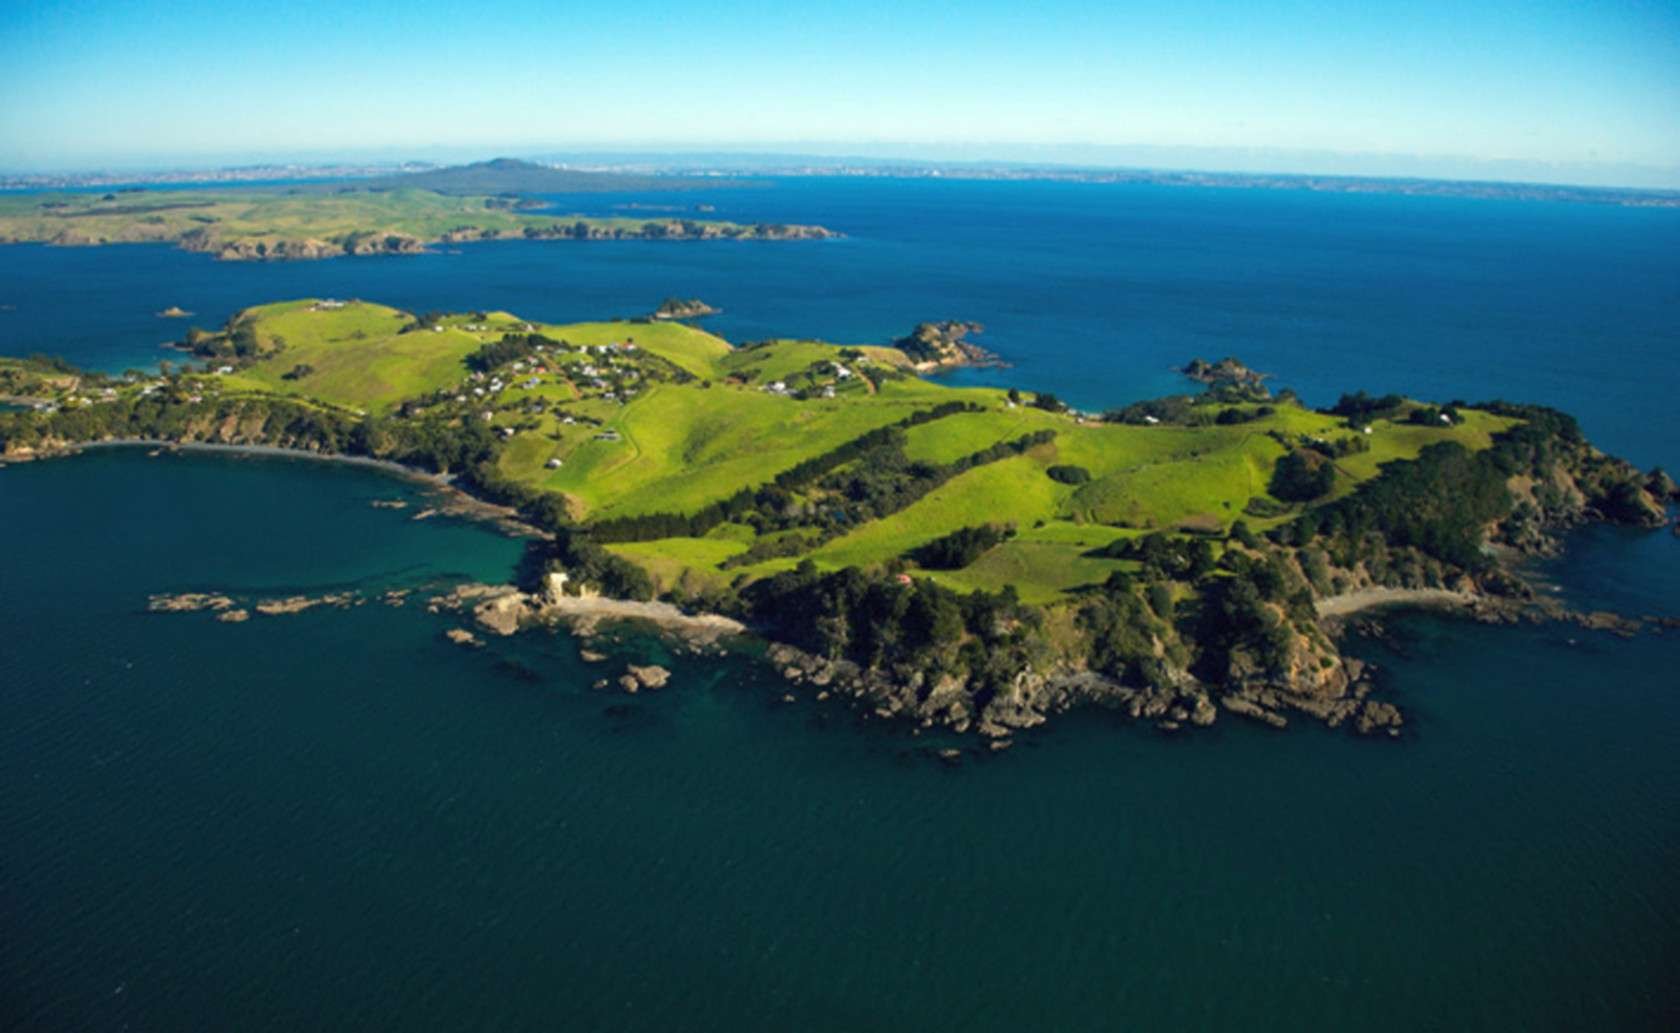 Cyrus island. Окленд-Айленд. Остров Чатем новая Зеландия. Окленд архипелаг остров. Новая Зеландия остров архипелаг Чатем остров.